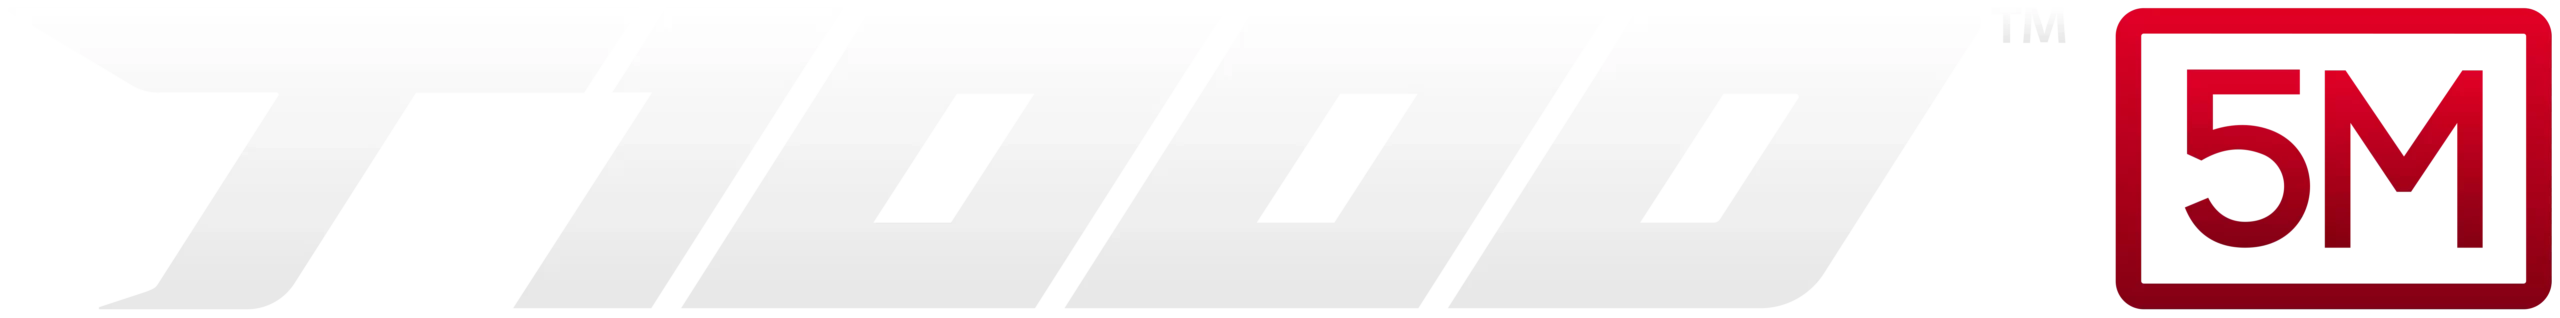 Logo T1000 5M